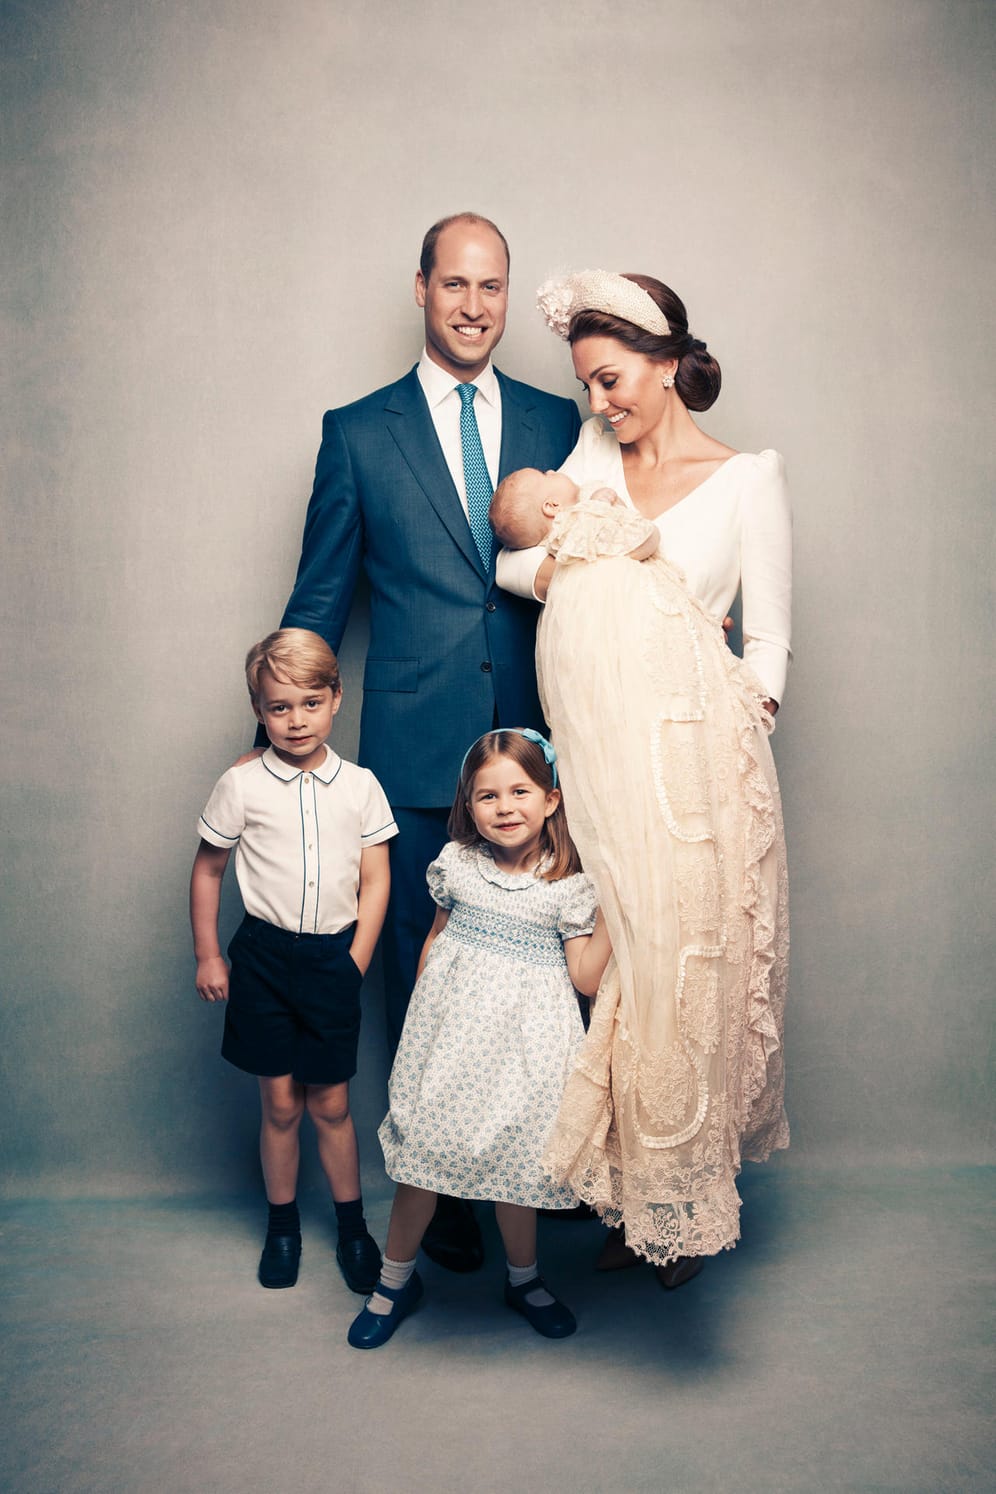 Familienfoto: Ebenfalls entstanden an der Taufe von Prinz Louis.